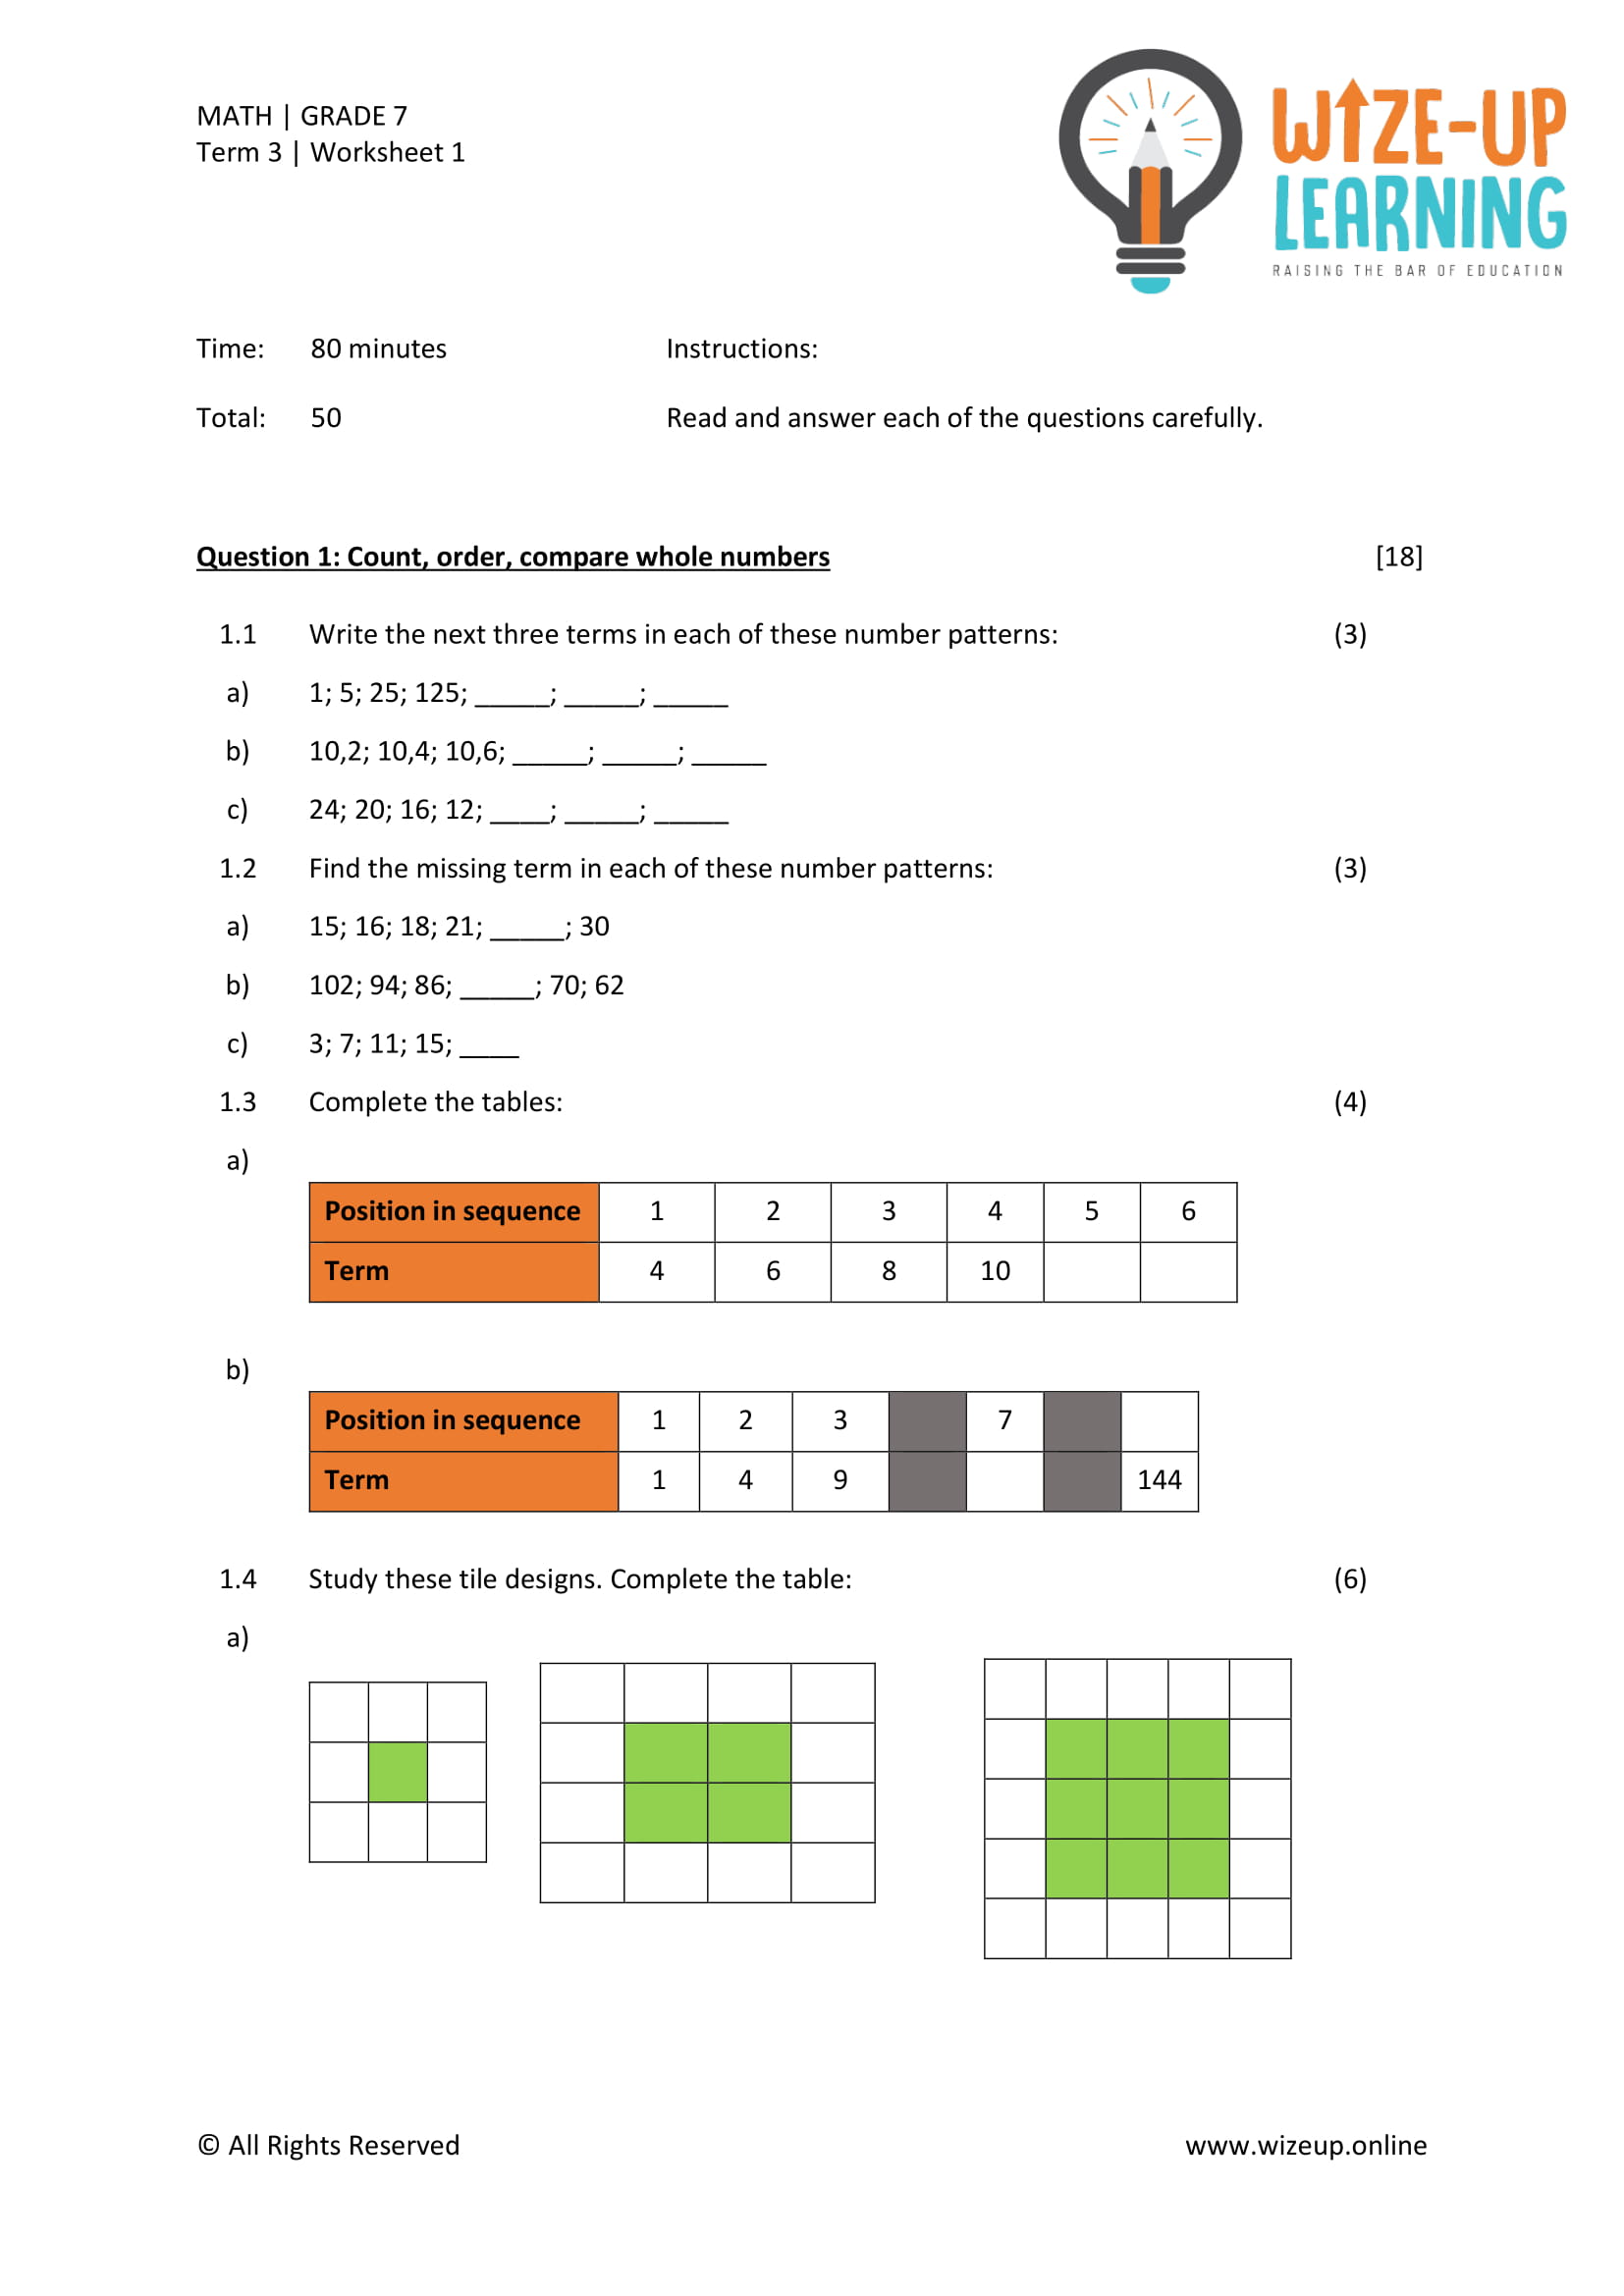 maths assignment grade 7 term 3